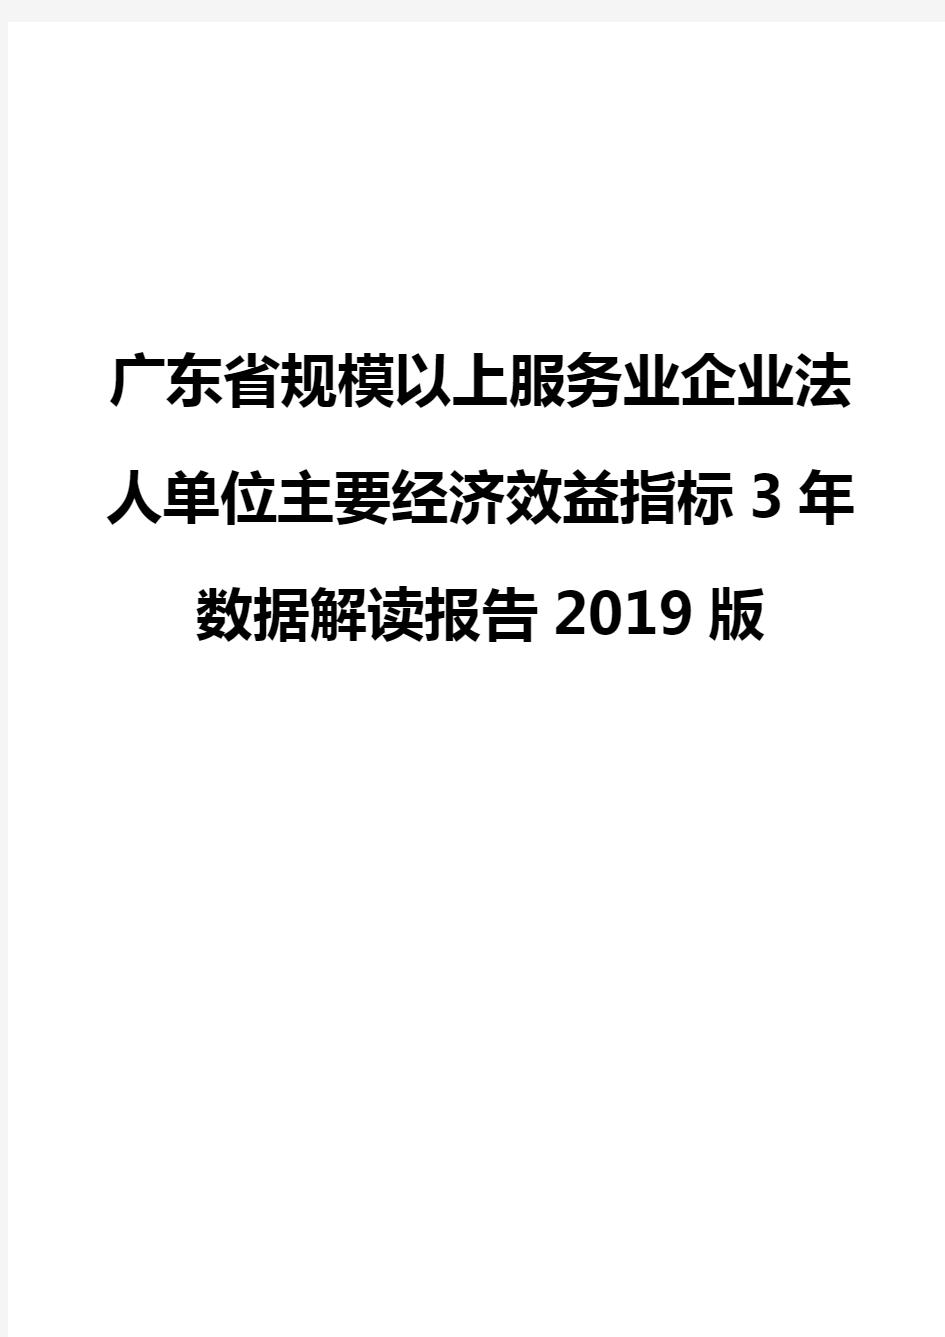 广东省规模以上服务业企业法人单位主要经济效益指标3年数据解读报告2019版